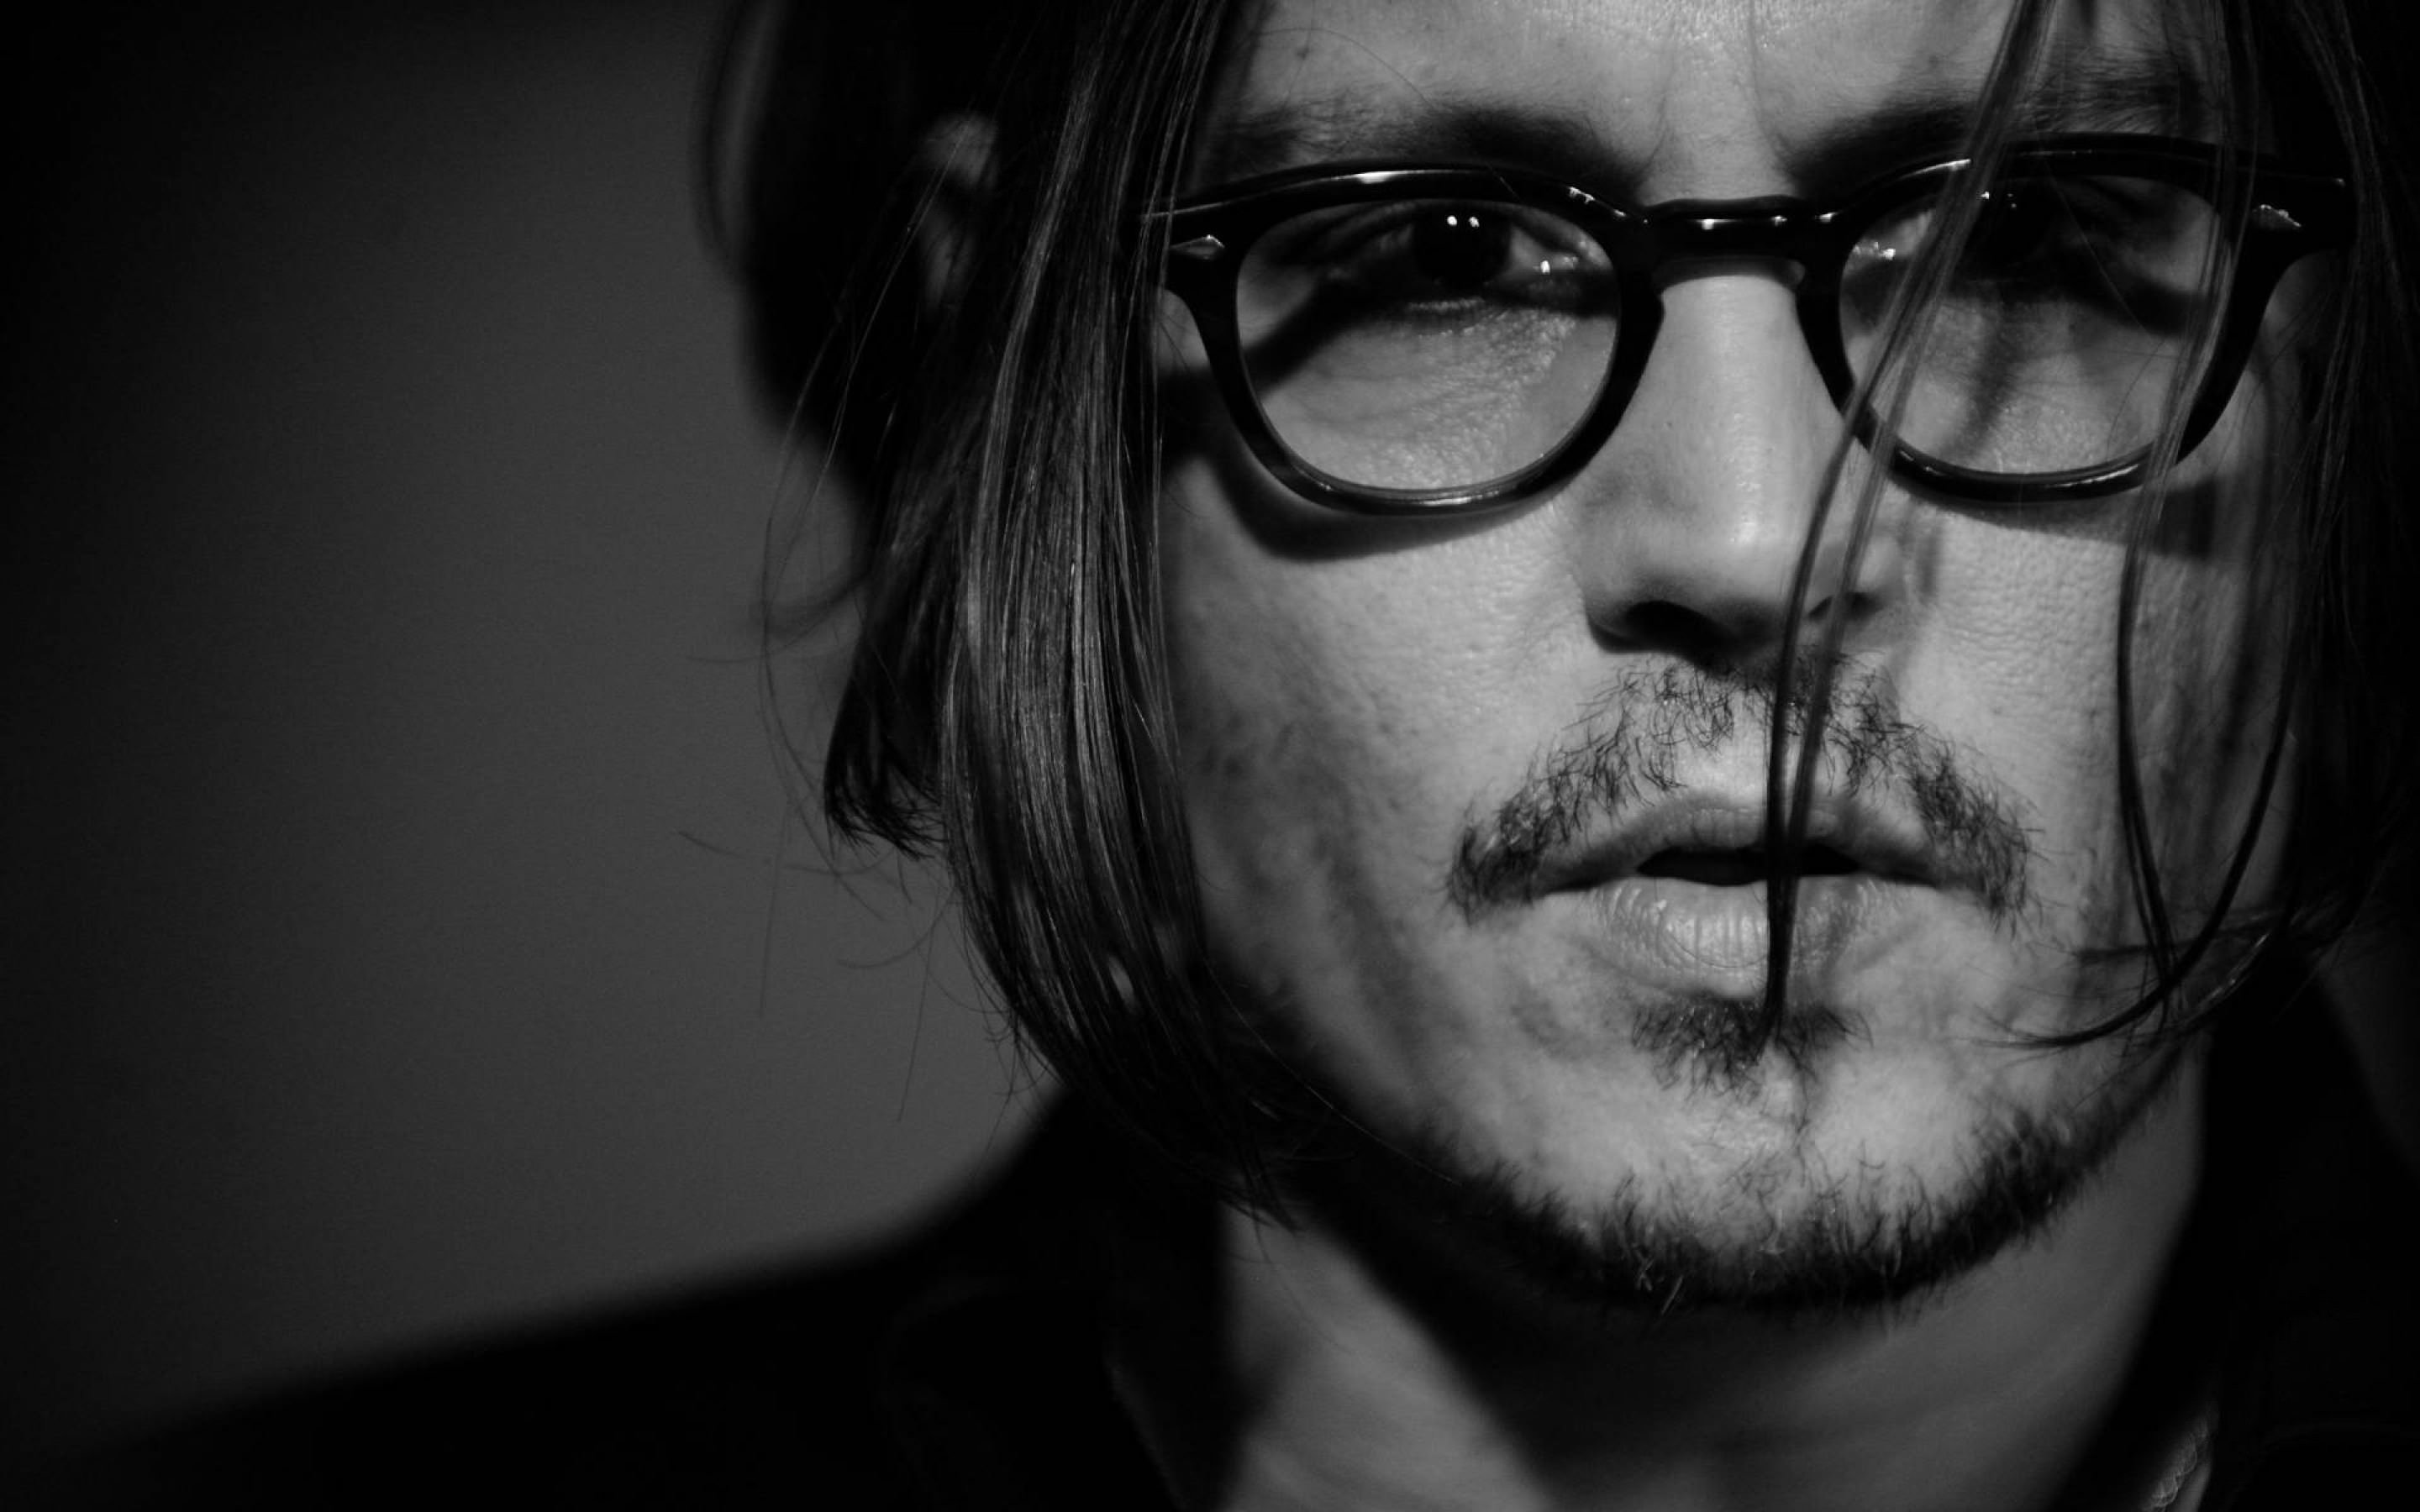 Johnny Depp Black & White Portrait Wallpaper for Desktop 2880x1800